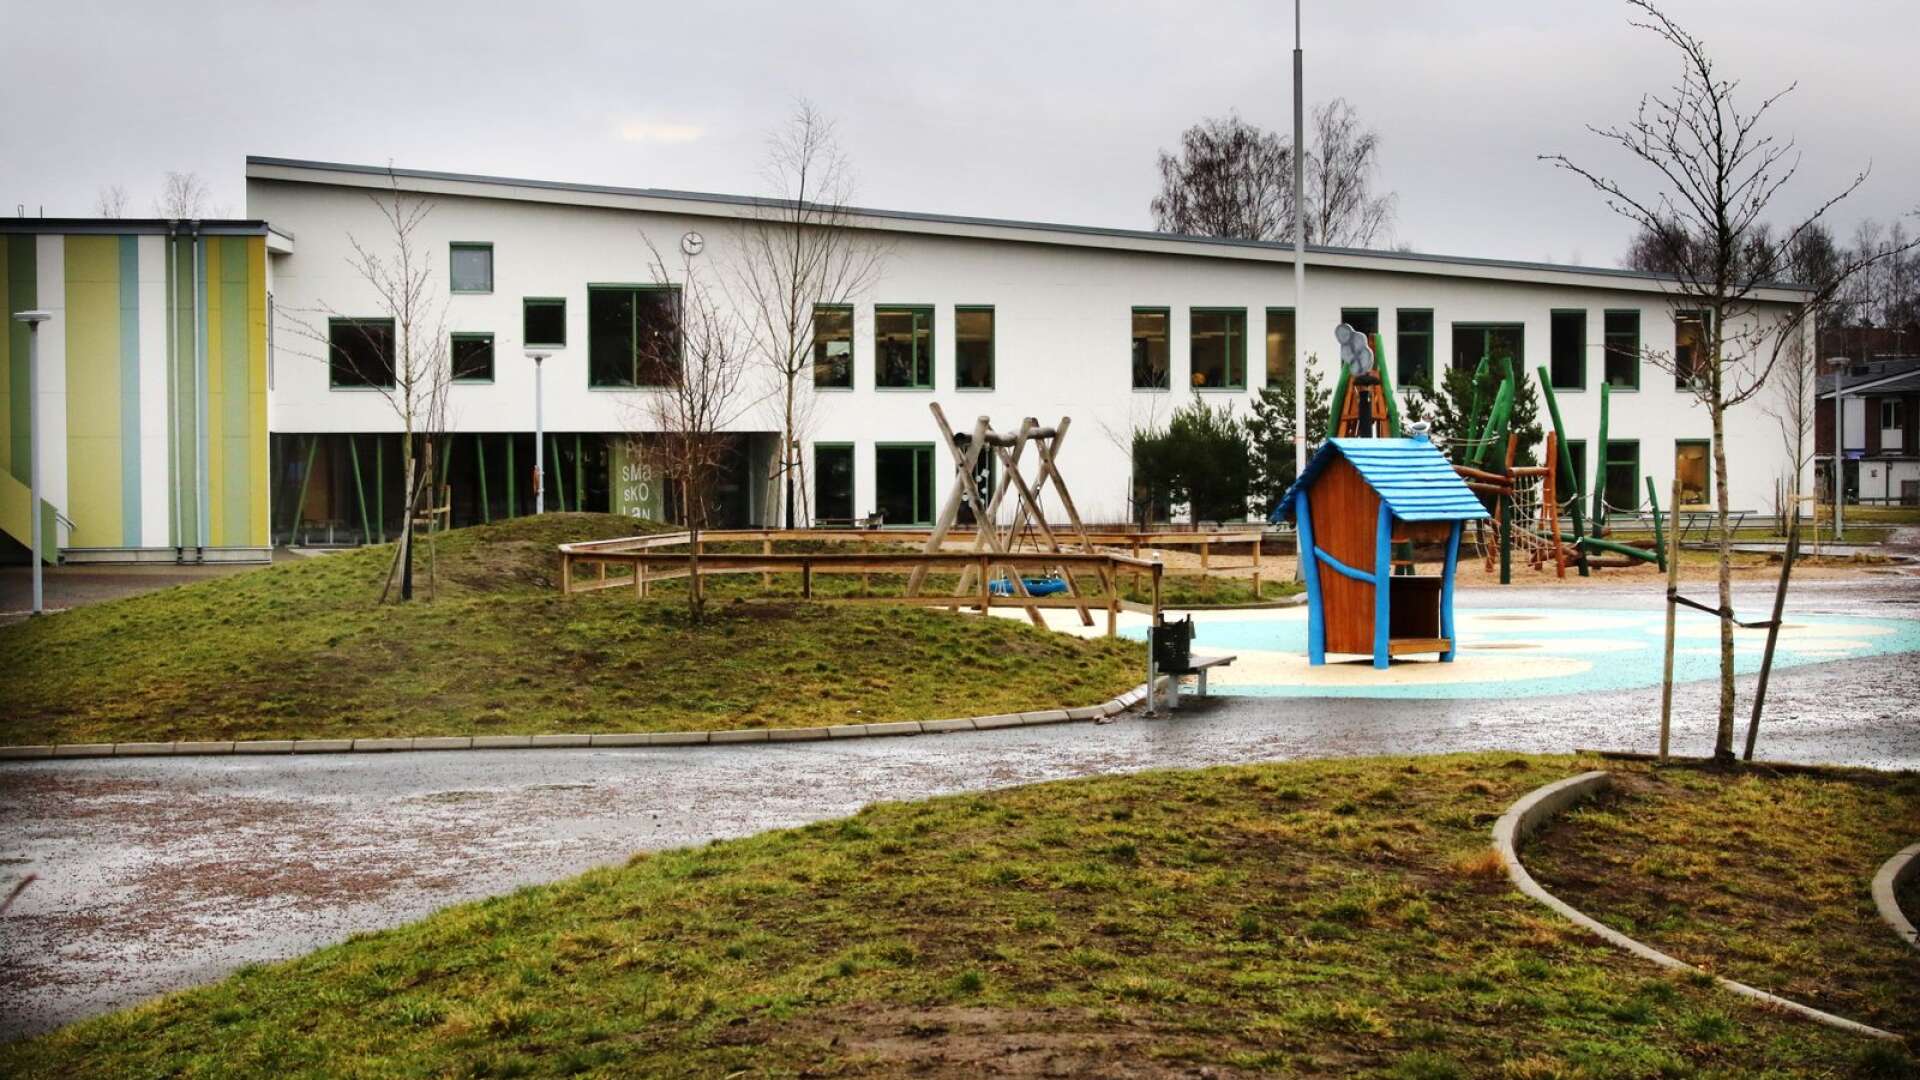 Två fritidsledare från Blåbäret stödjer skolans verksamhet på Prismaskolan när kommunens offentliga mötesplatser håller stängt.